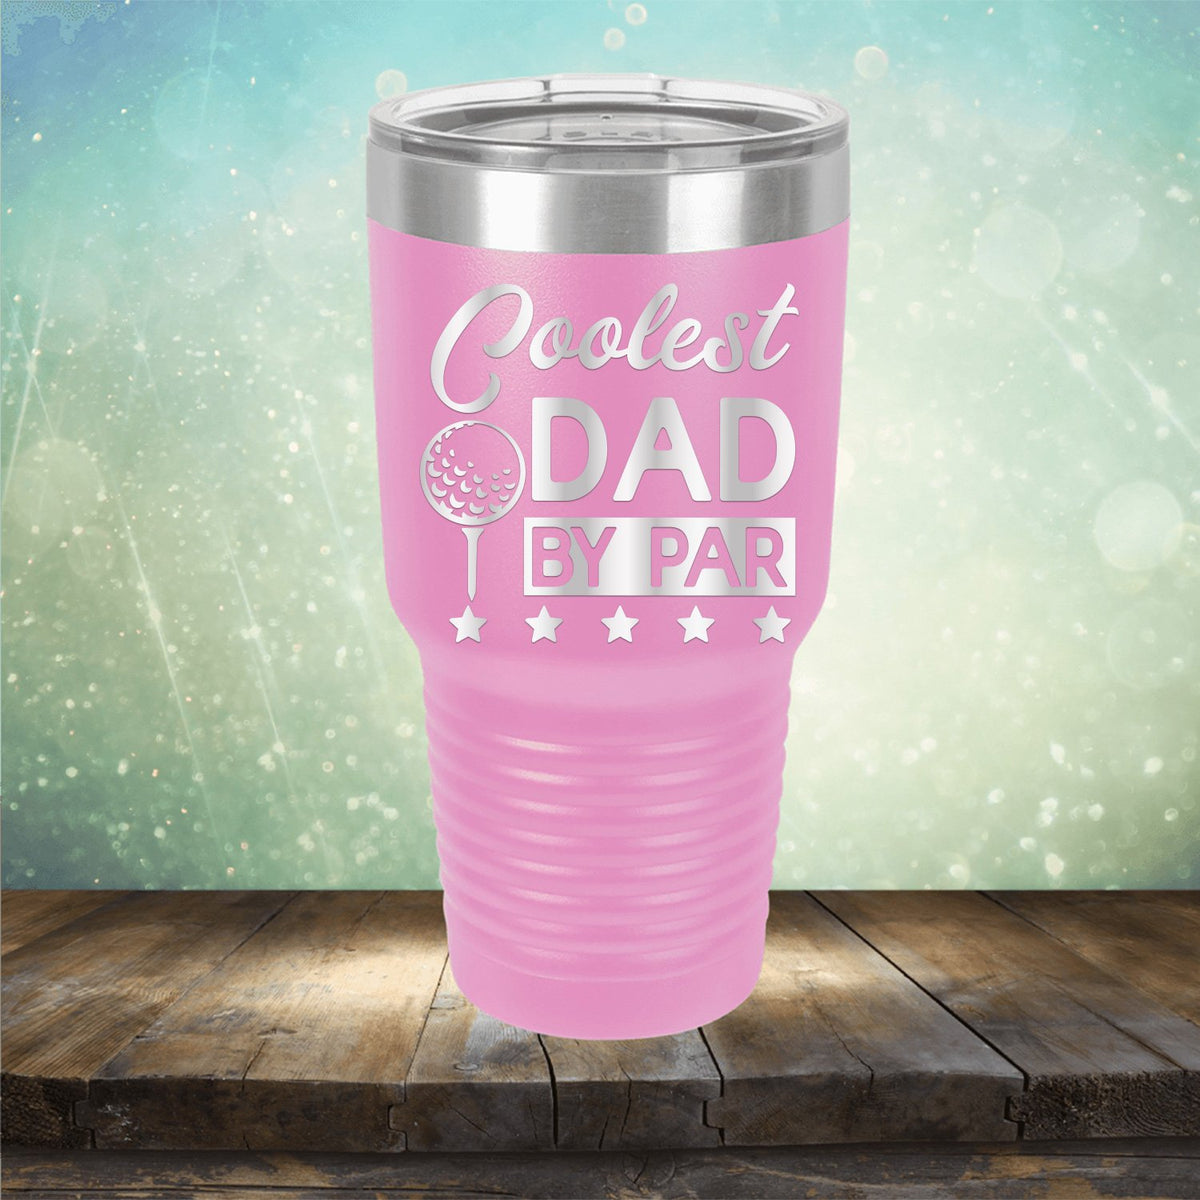 Coolest Dad By Par - Laser Etched Tumbler Mug